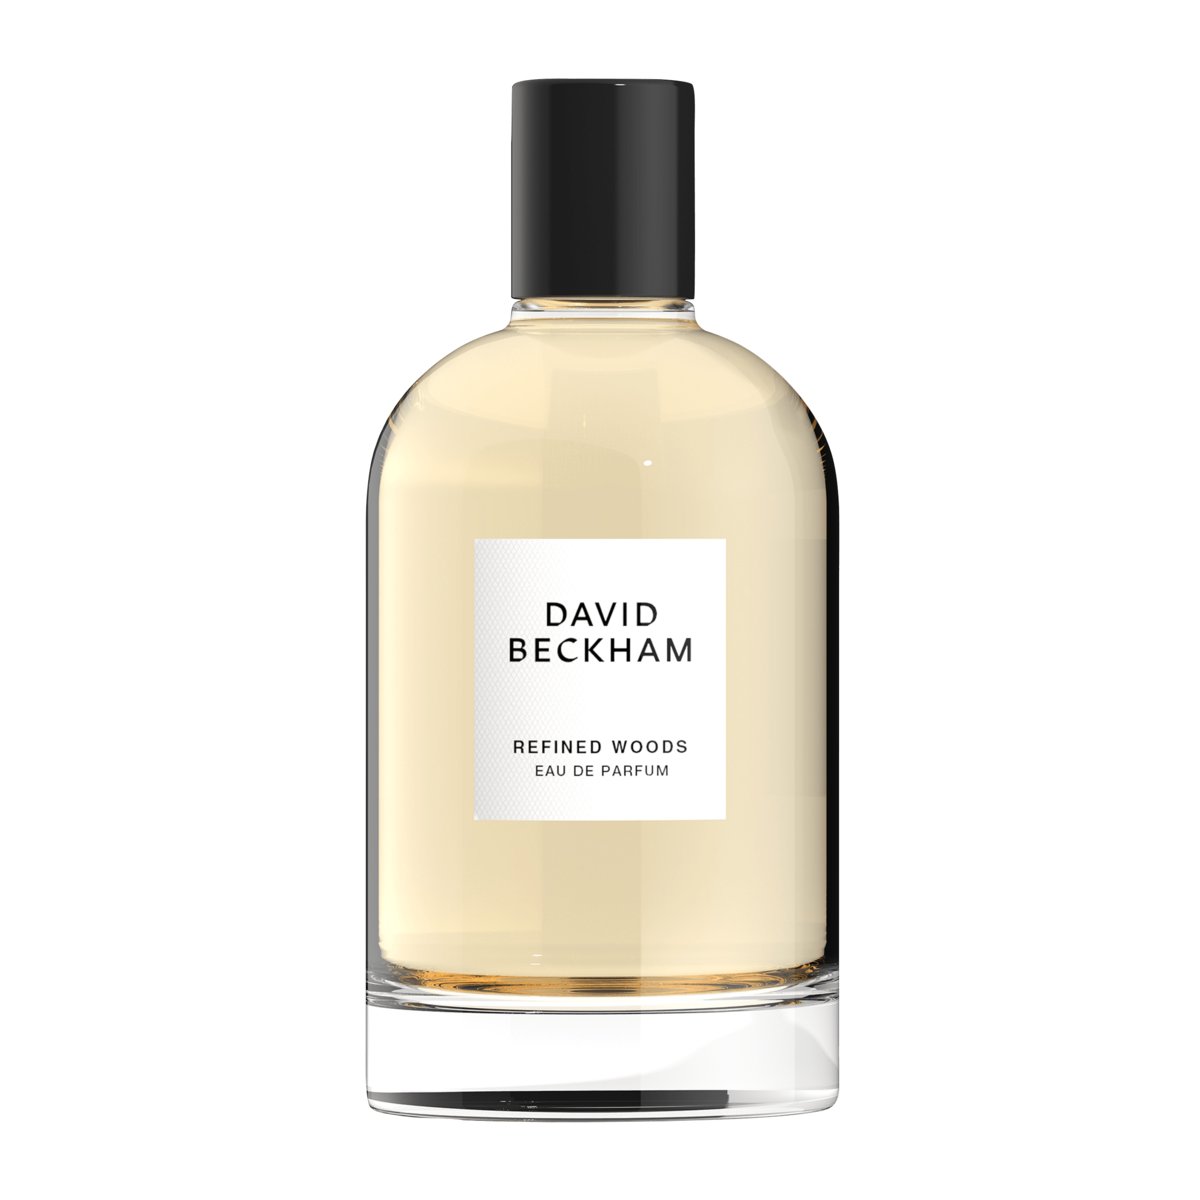 David Beckham Refined Woods woda perfumowana 100 ml dla mężczyzn